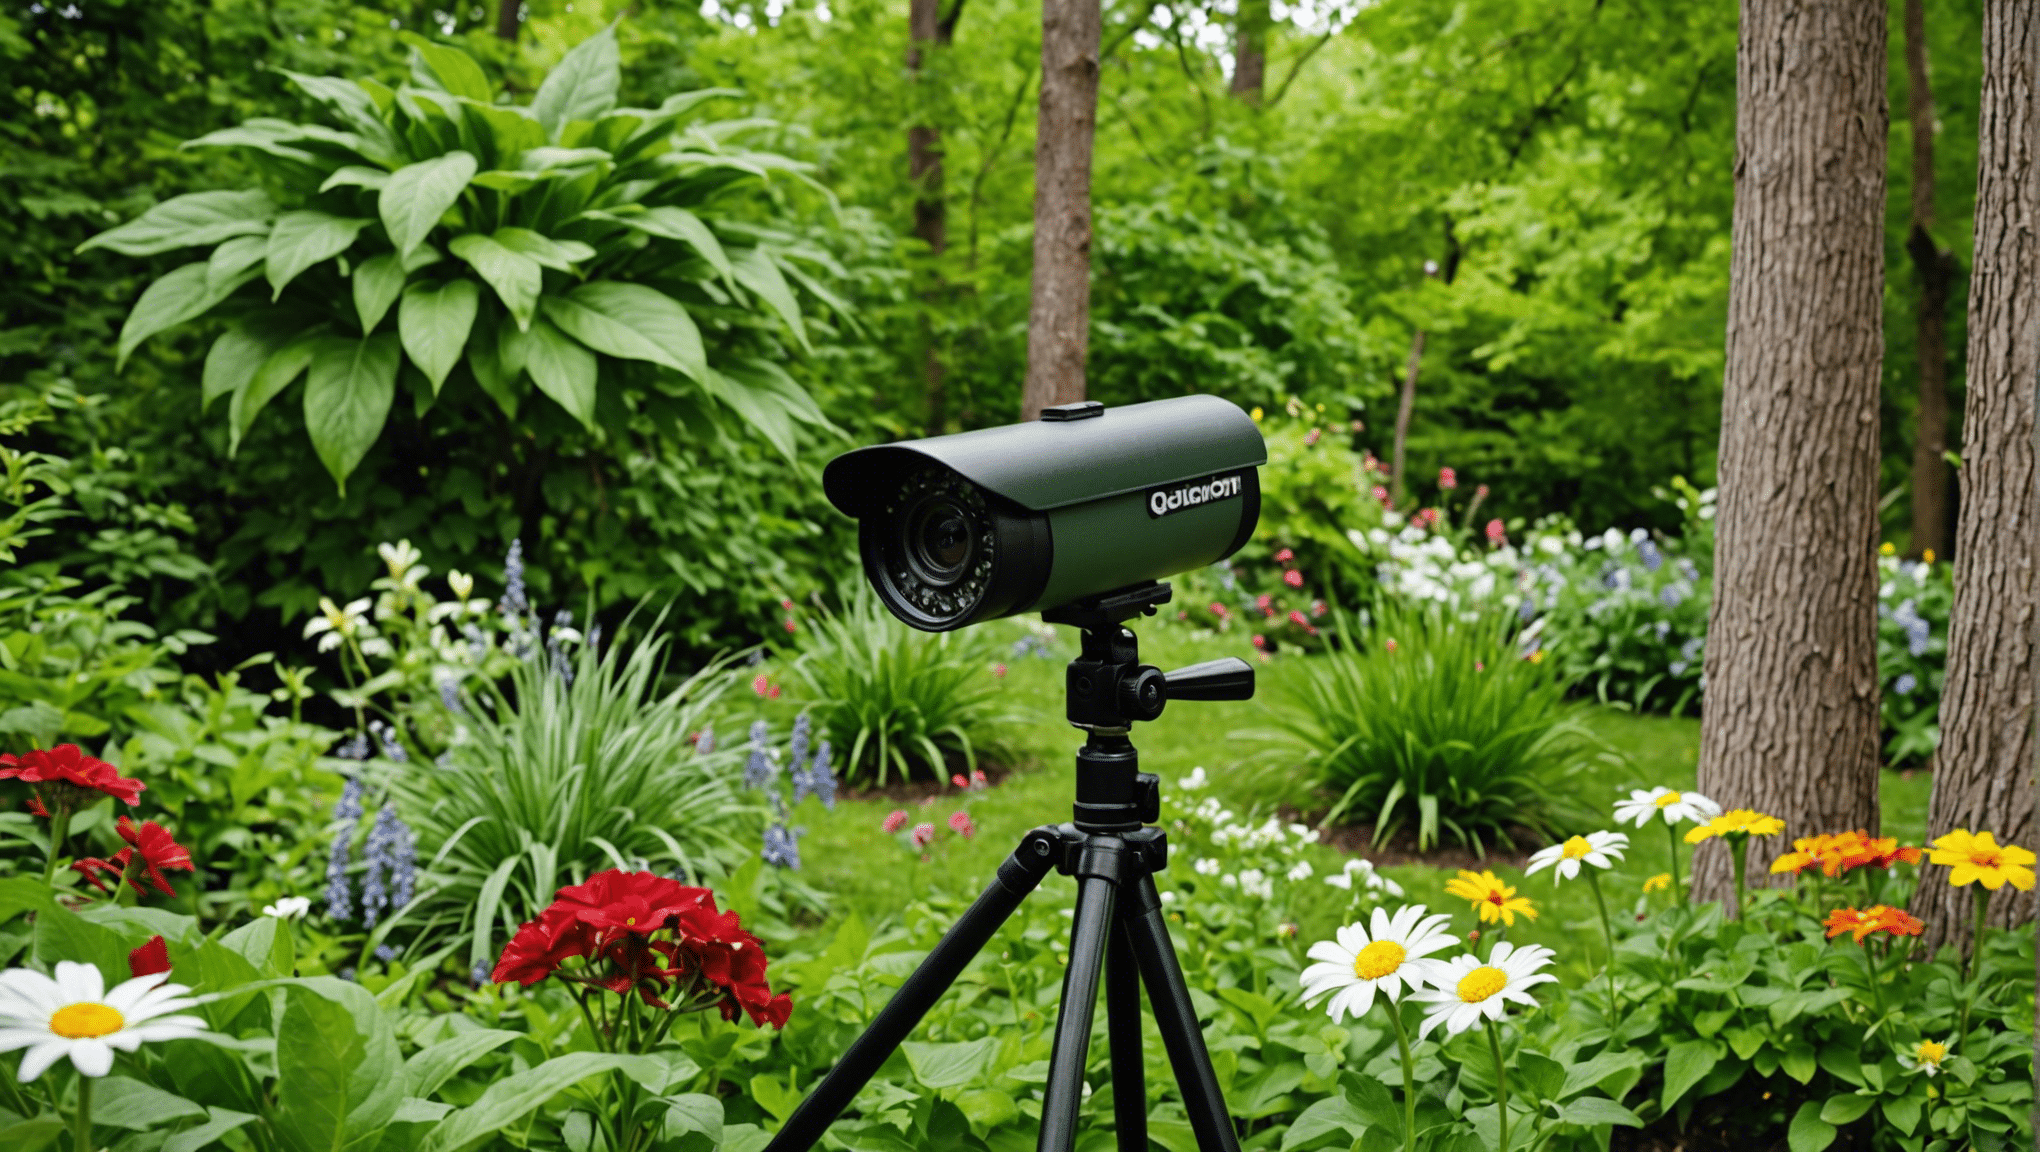 גלה את המצלמות בחצר האחורית שלנו כדי ללכוד חיות בפעולה ולהביא את הטבע לפוקוס. חקור את מבחר המצלמות האיכותיות שלנו המופעלות בתנועה לחובבי חיות בר.